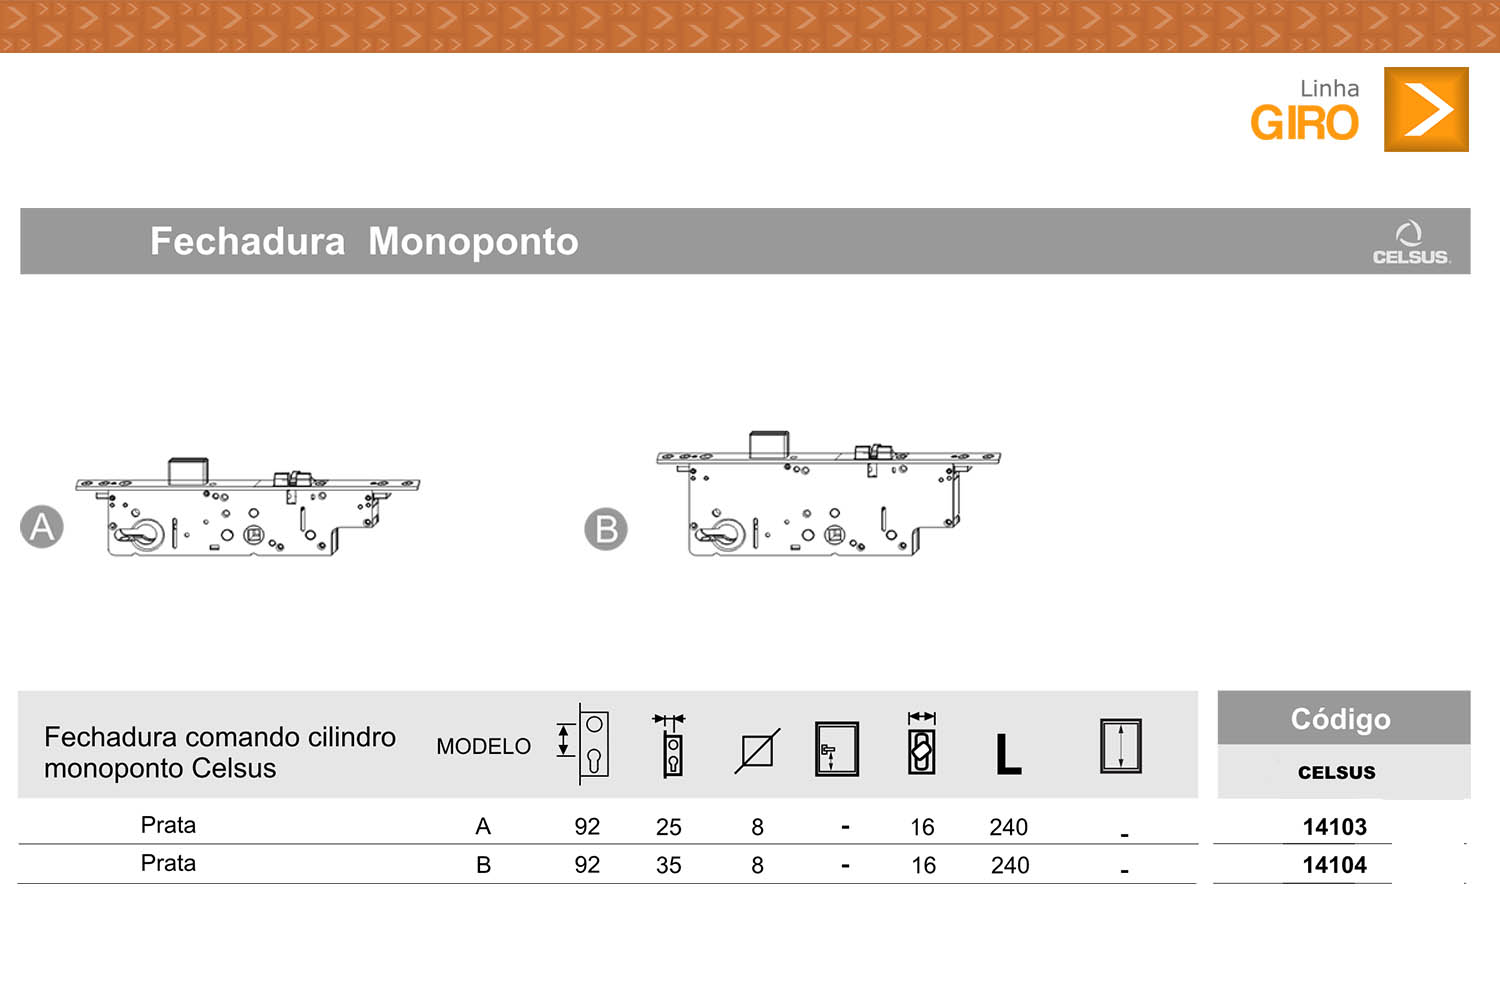 Tabela de códigos fechadura monoponto Celsus